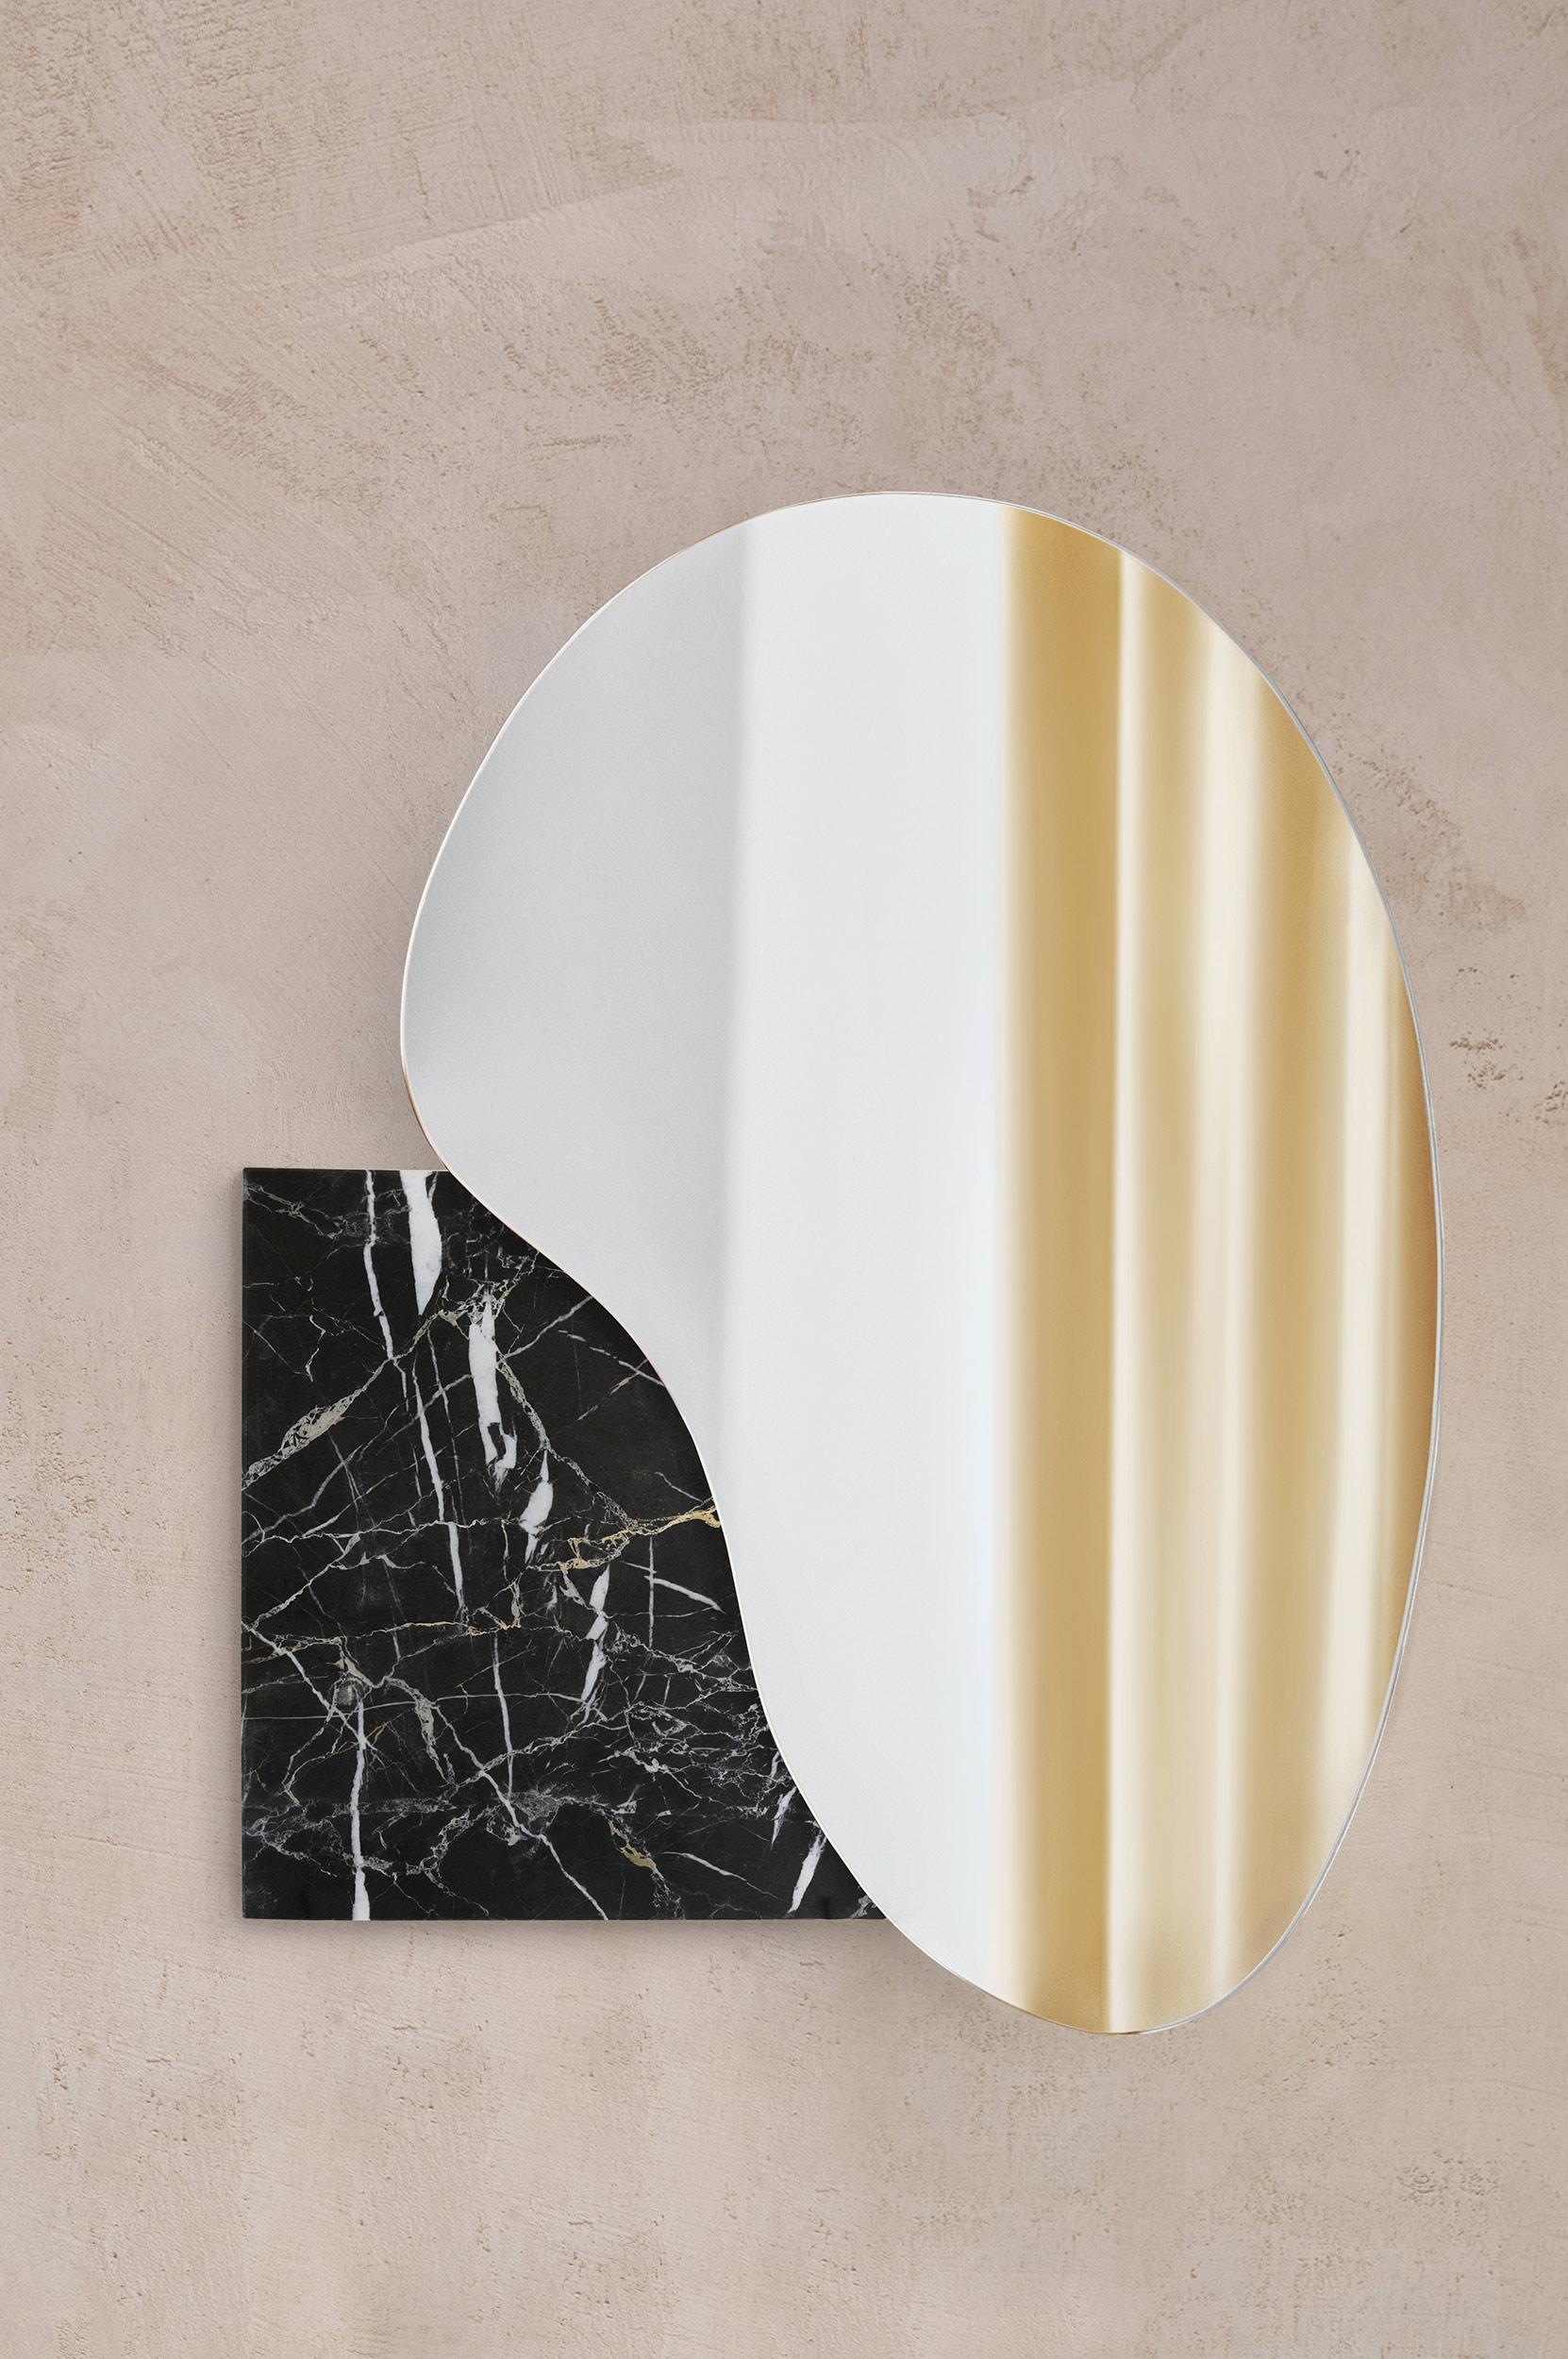 Miroir mural moderne en forme de lac par NOOM
Designers : Maryna Dague & Nathan Baraness

Modèle présenté dans l'image :
Numéro 4
Base marbre noir alanya

